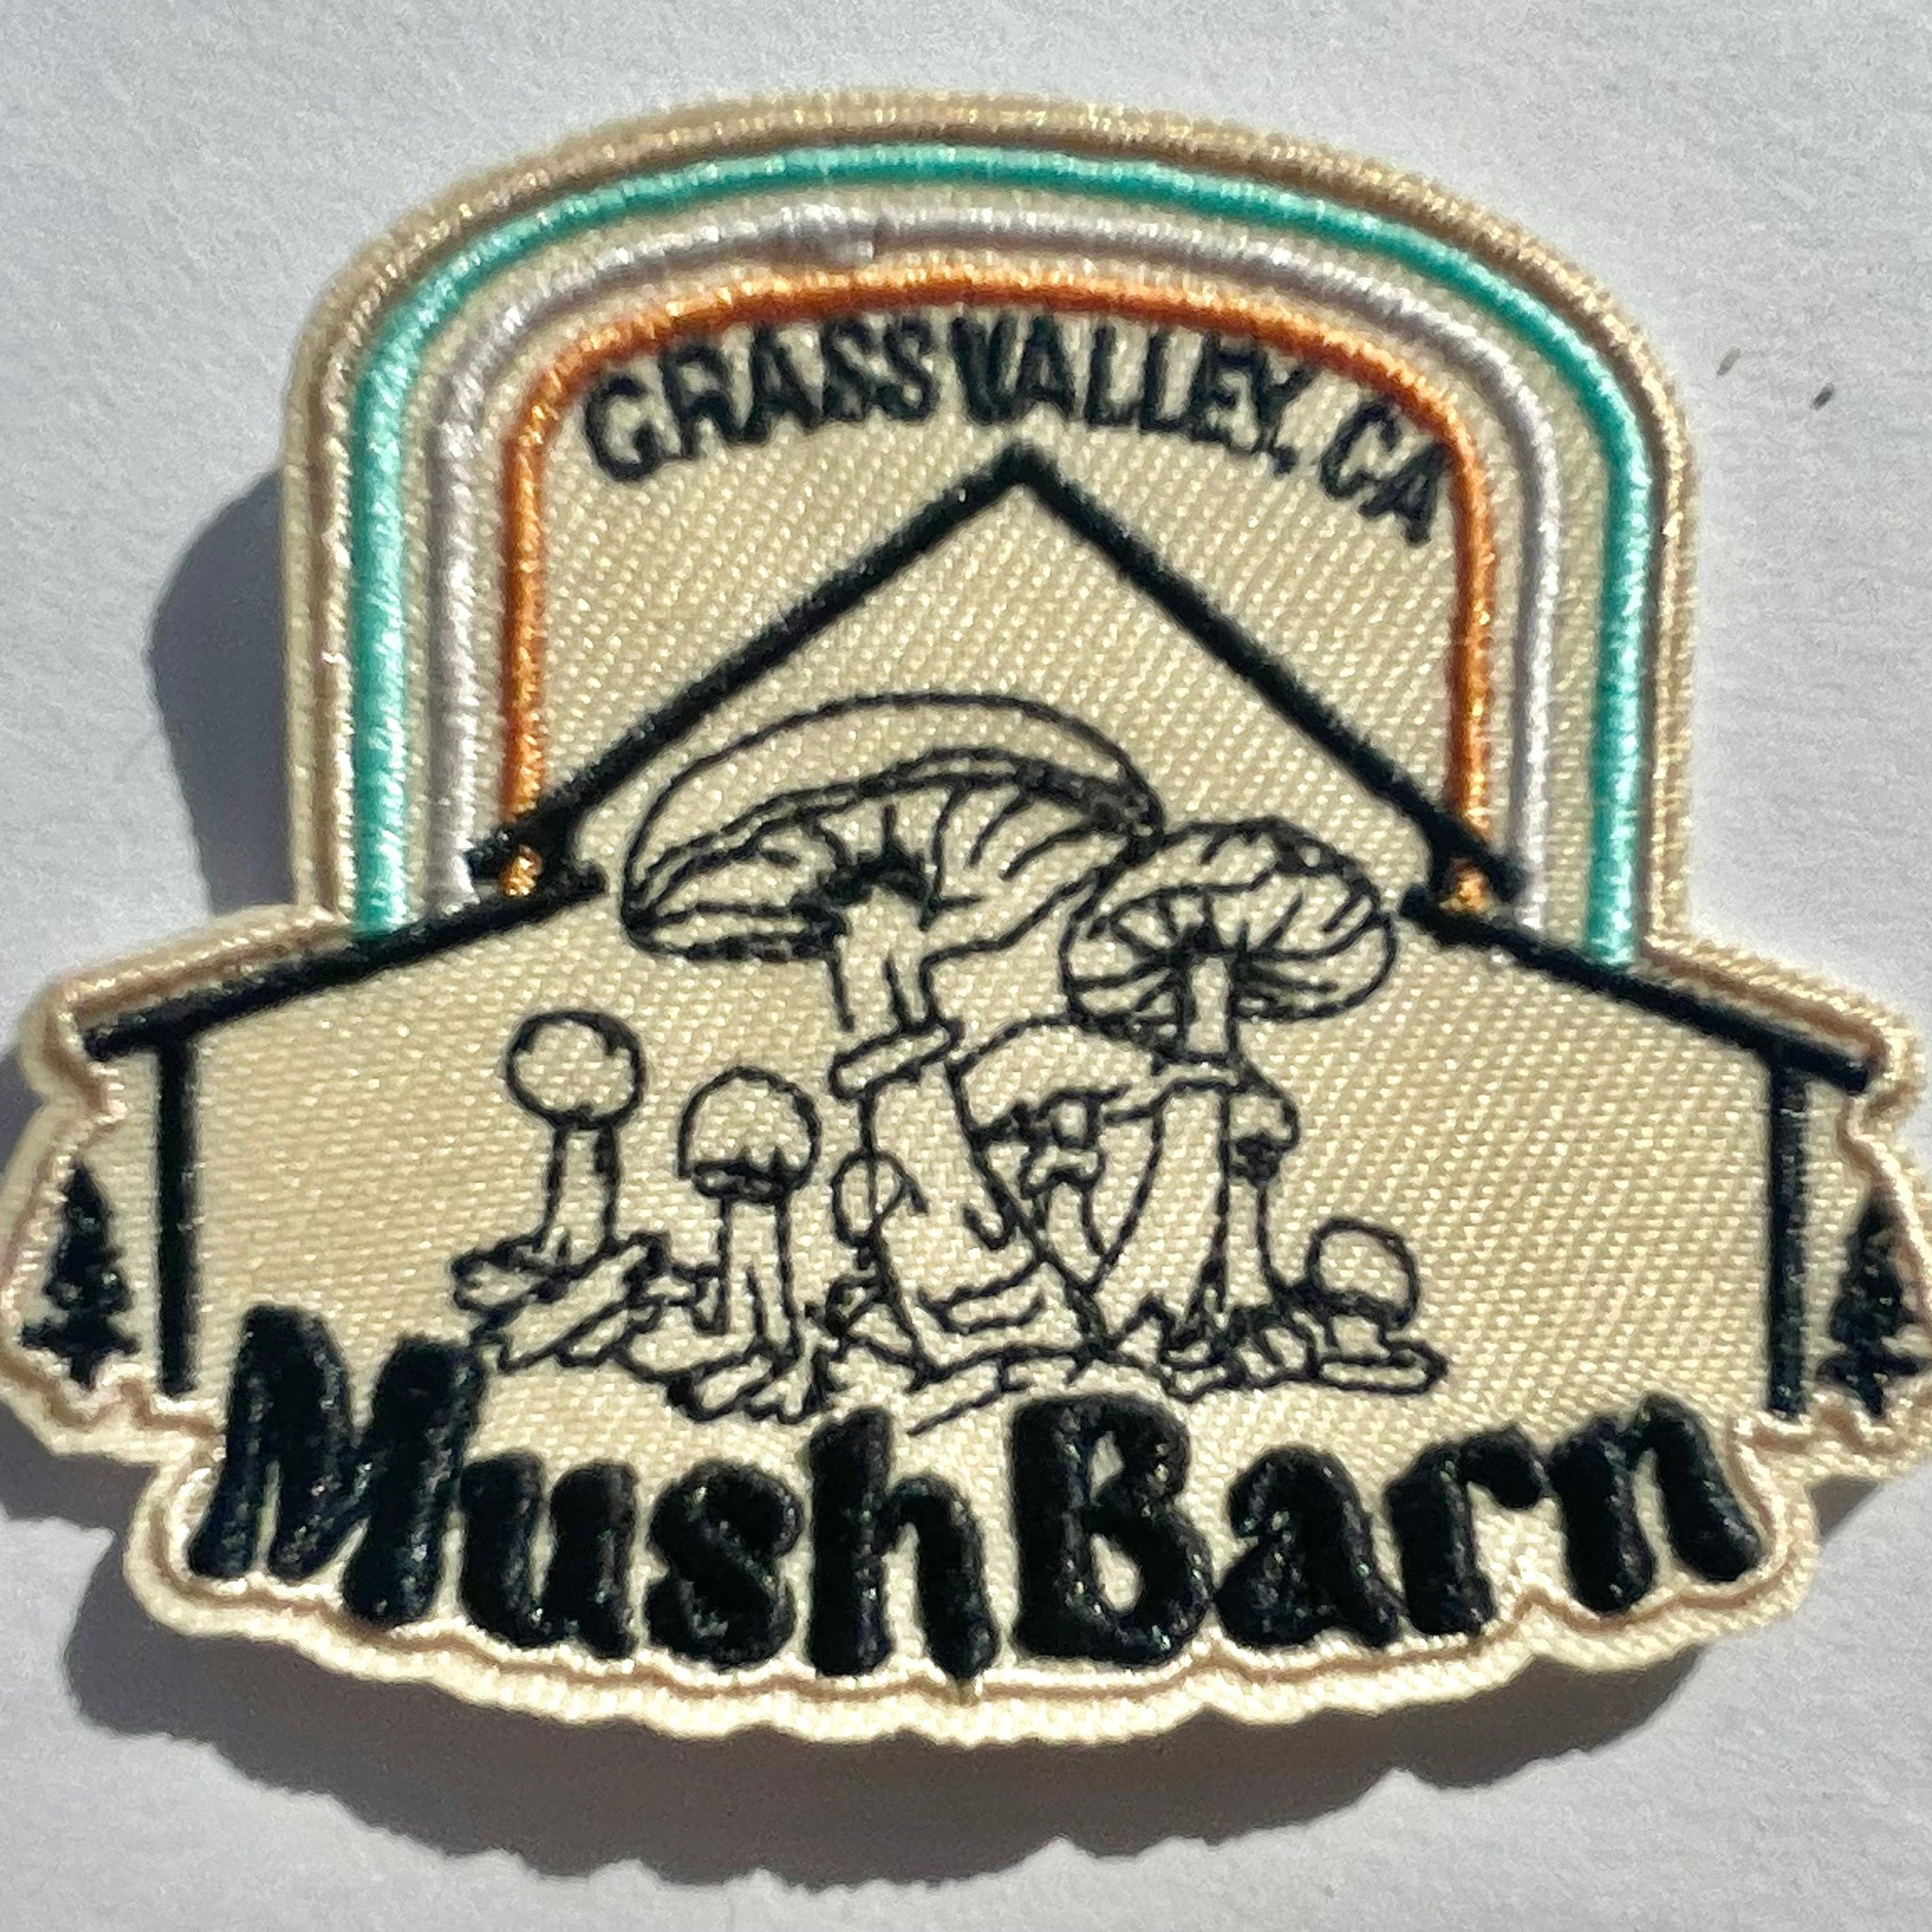 MushBarn patch - stick on